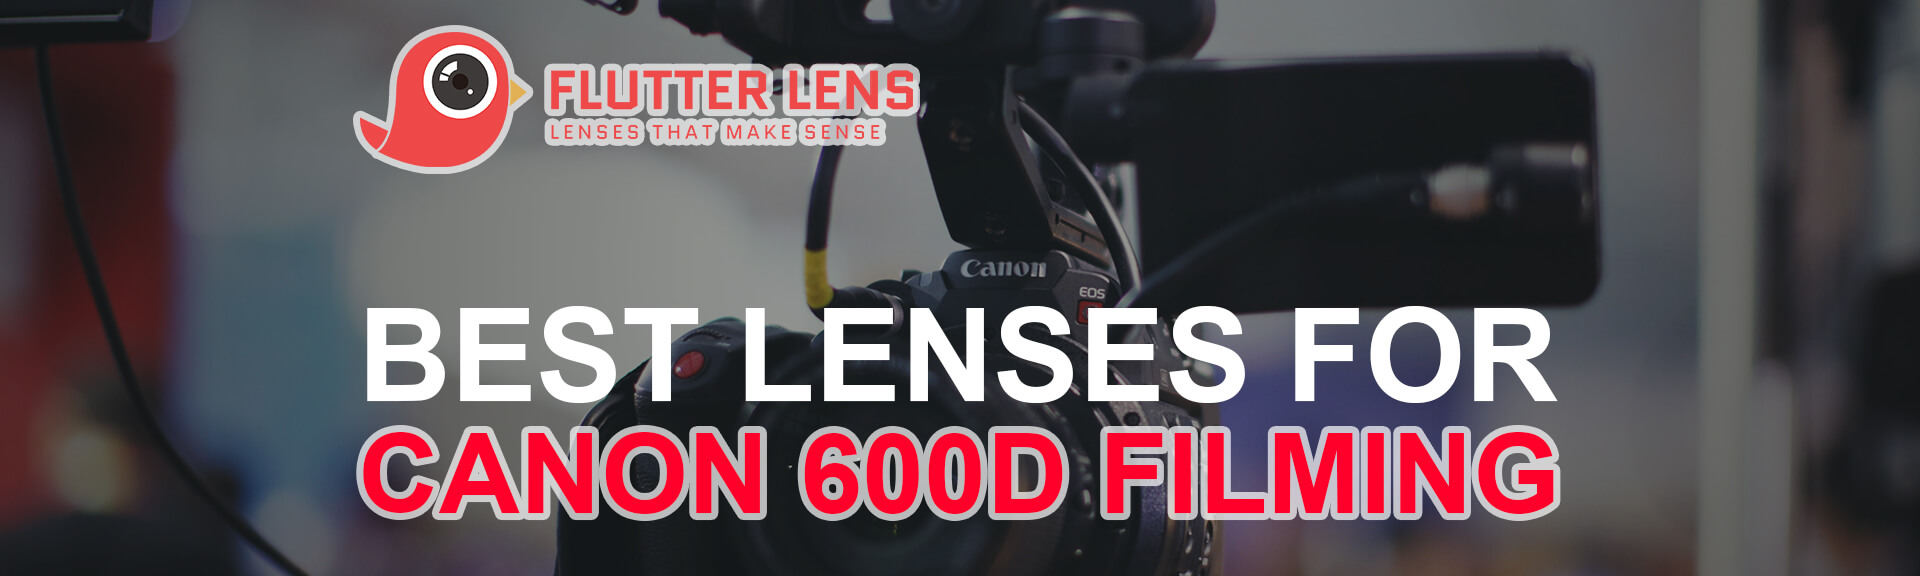 Best Lenses For Canon 600D Filming